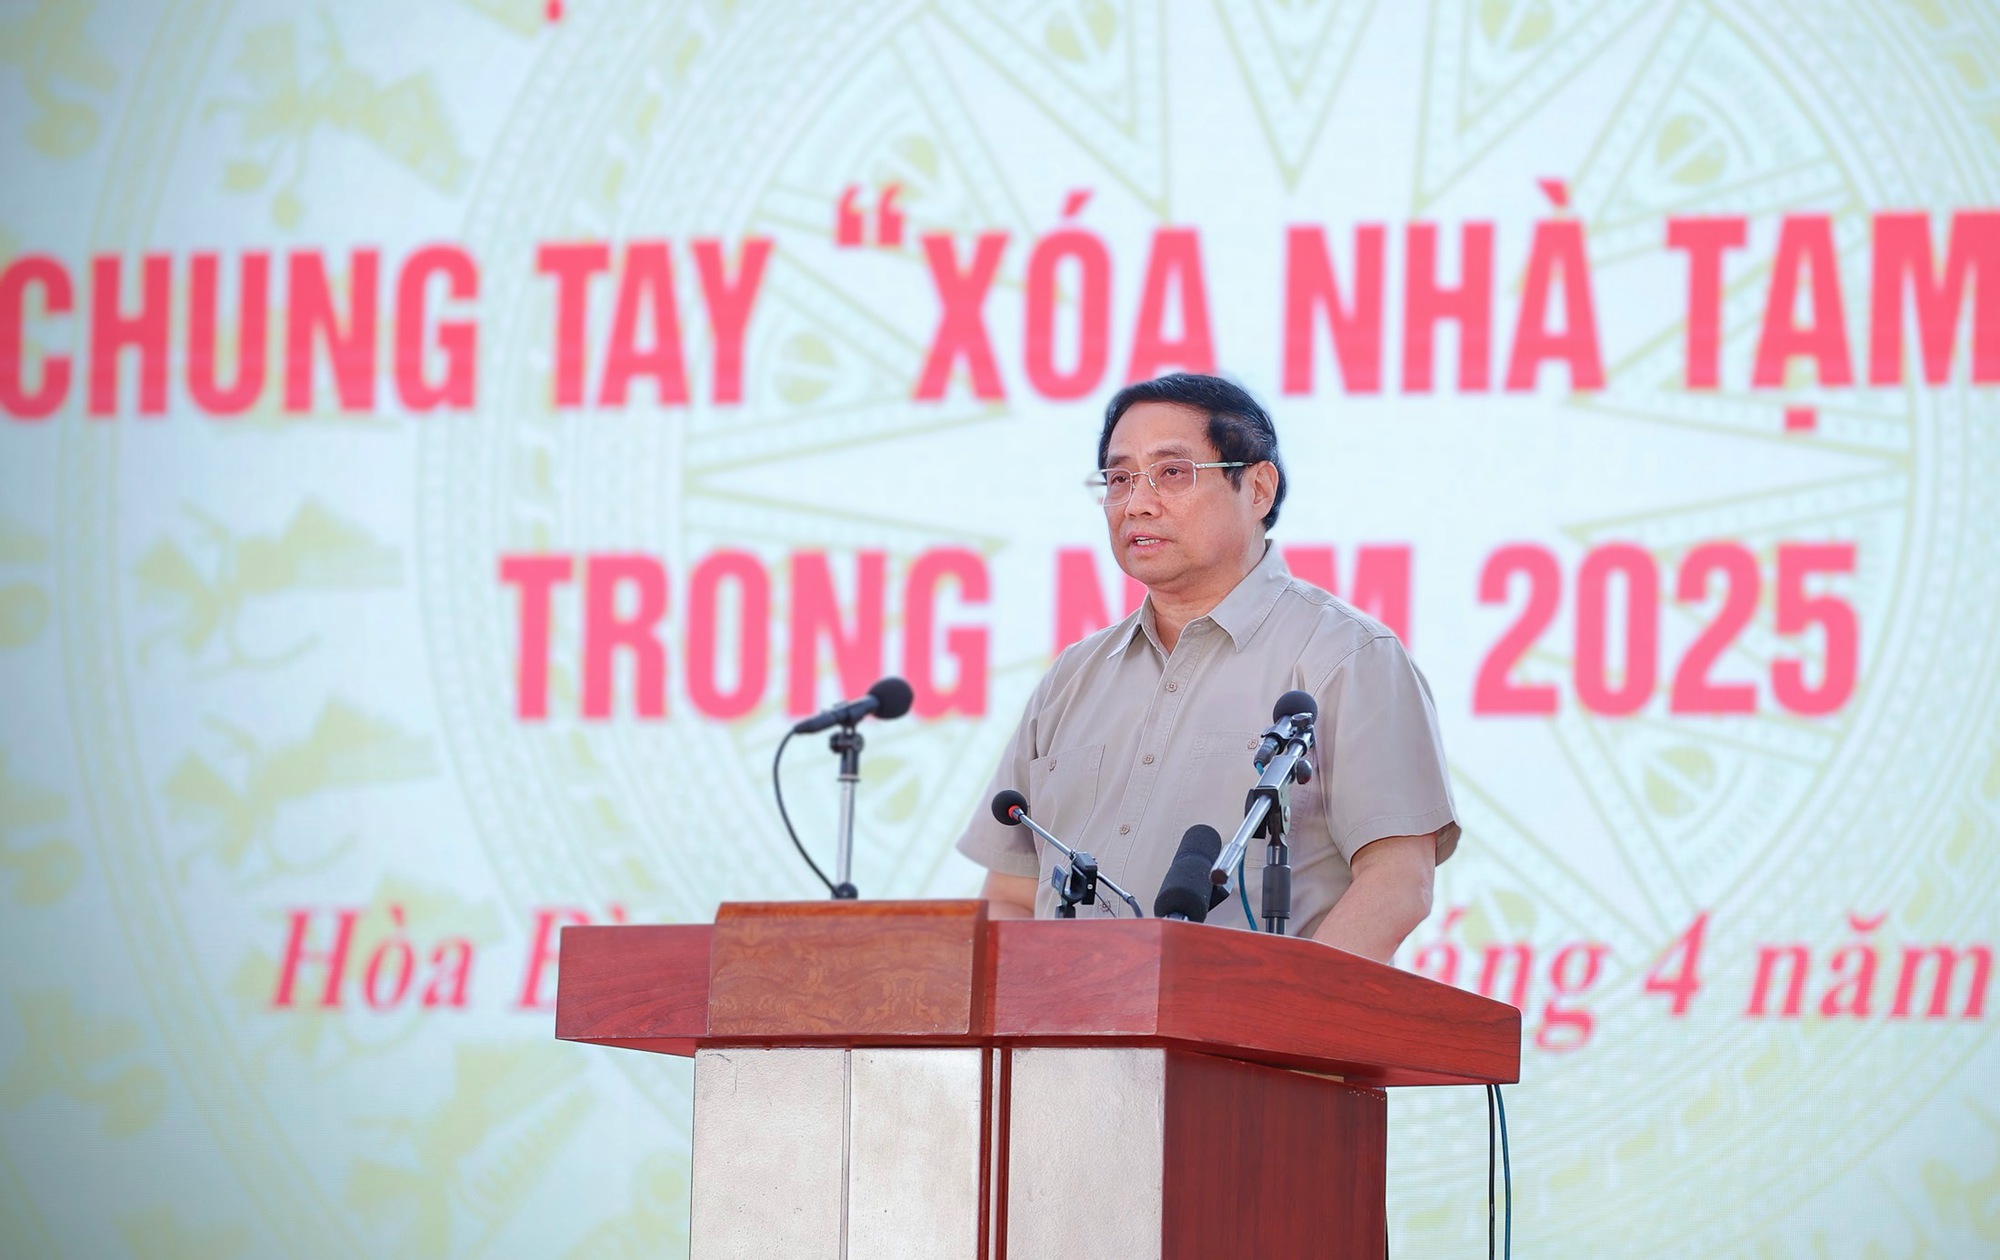 Thủ tướng Phạm Minh Chính phát biểu phát động phong trào thi đua cả nước chung tay ""xóa nhà tạm, nhà dột nát" trên phạm vi cả nước trong năm 2025 - Ảnh: VGP/Nhật Bắc